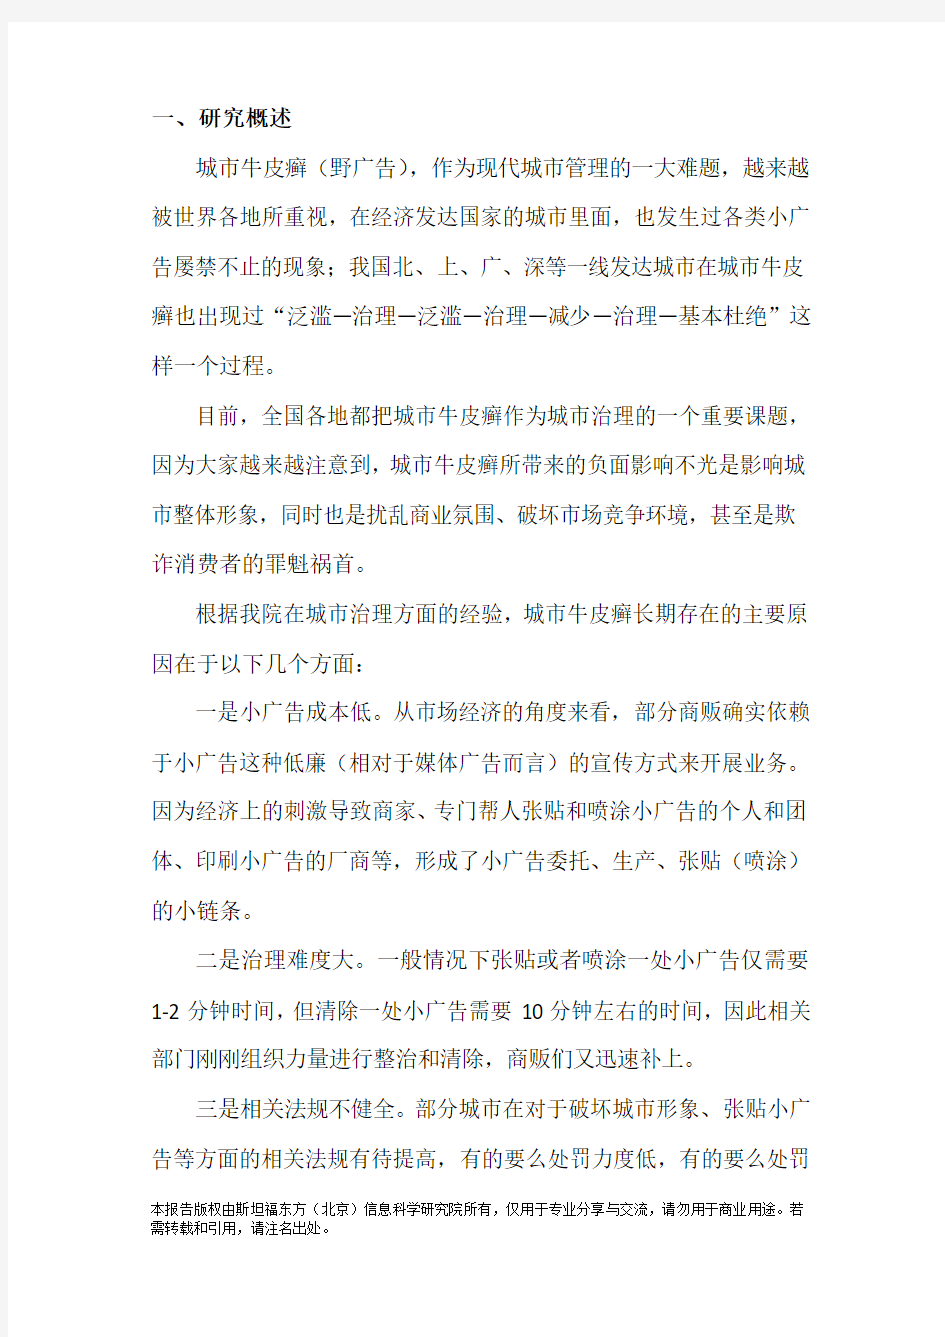 桂林市城市牛皮癣及小广告治理研究报告